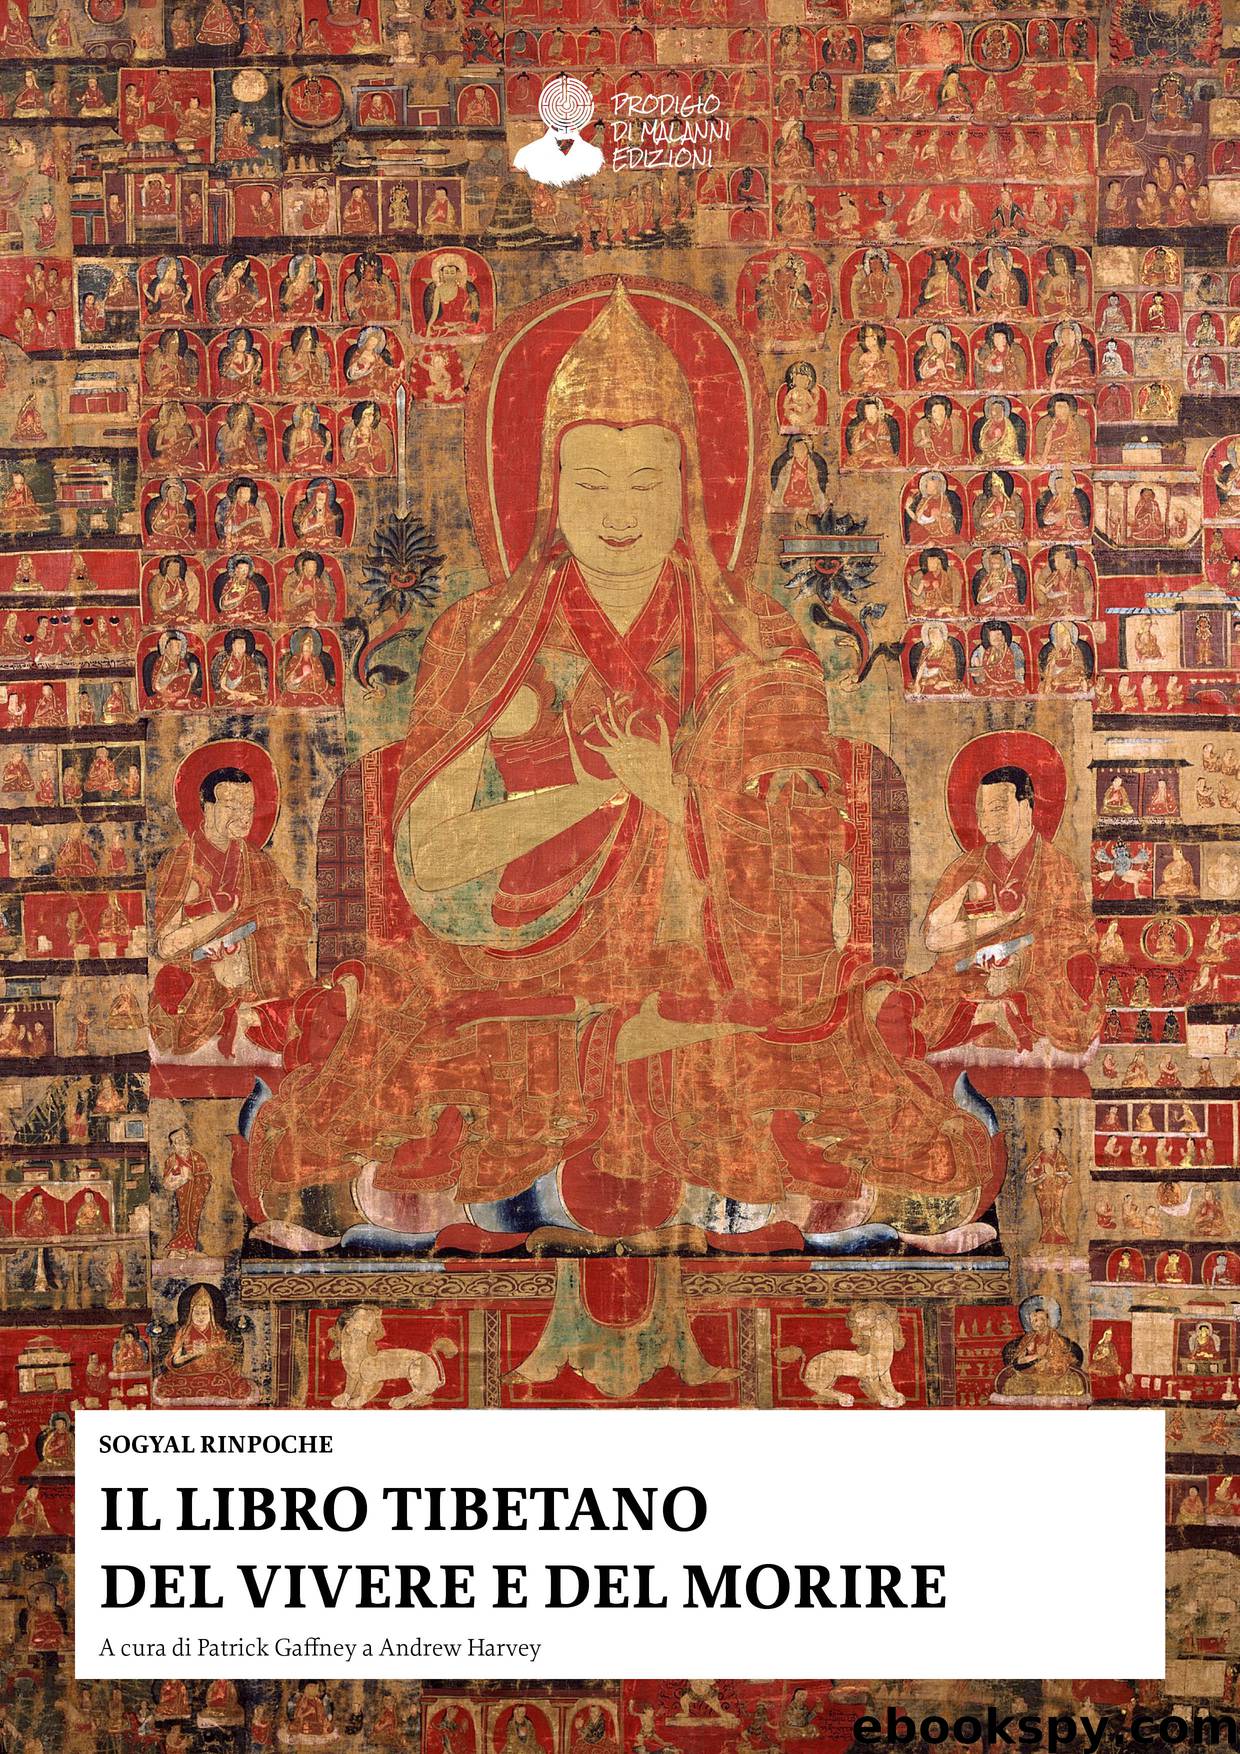 Il libro tibetano del vivere e del morire by Sogyal Rinpoche